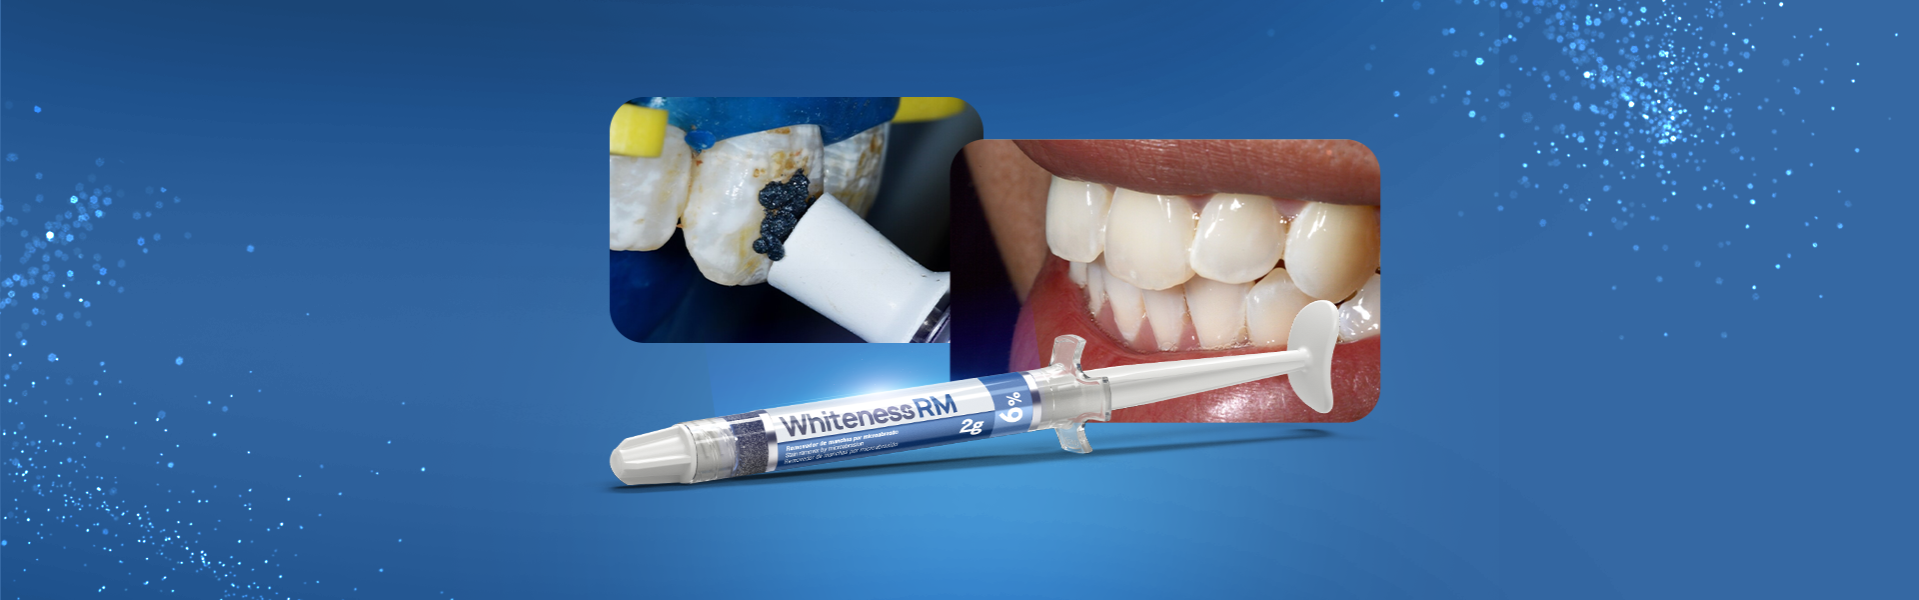 Whiteness RM - Soluções minimamente invasivas para a fluorose dental: microabrasão e clareamento